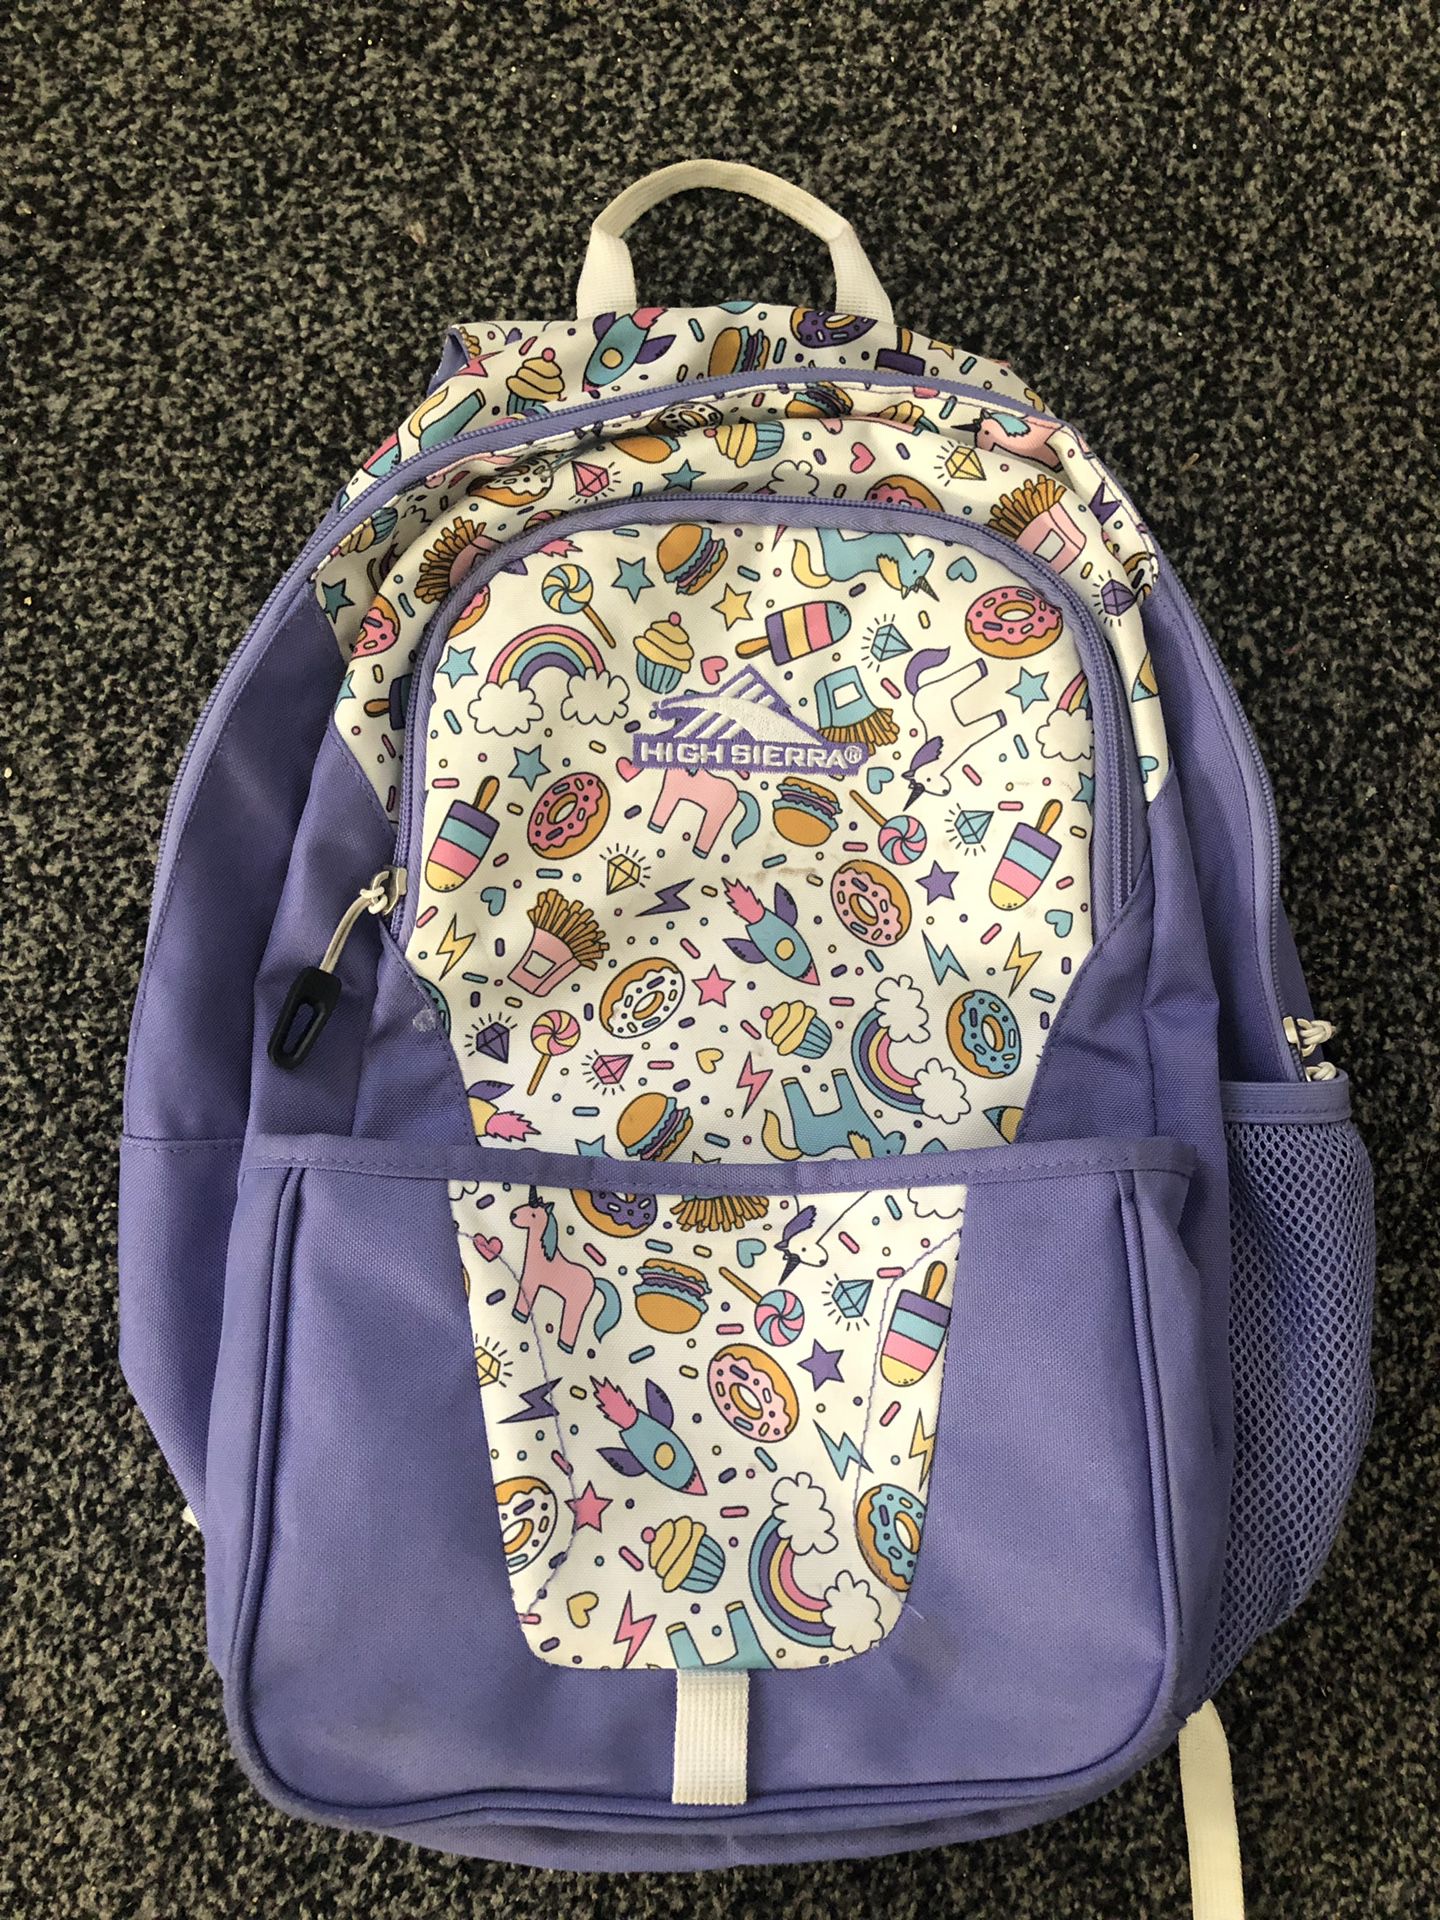 Unicorn girl backpack